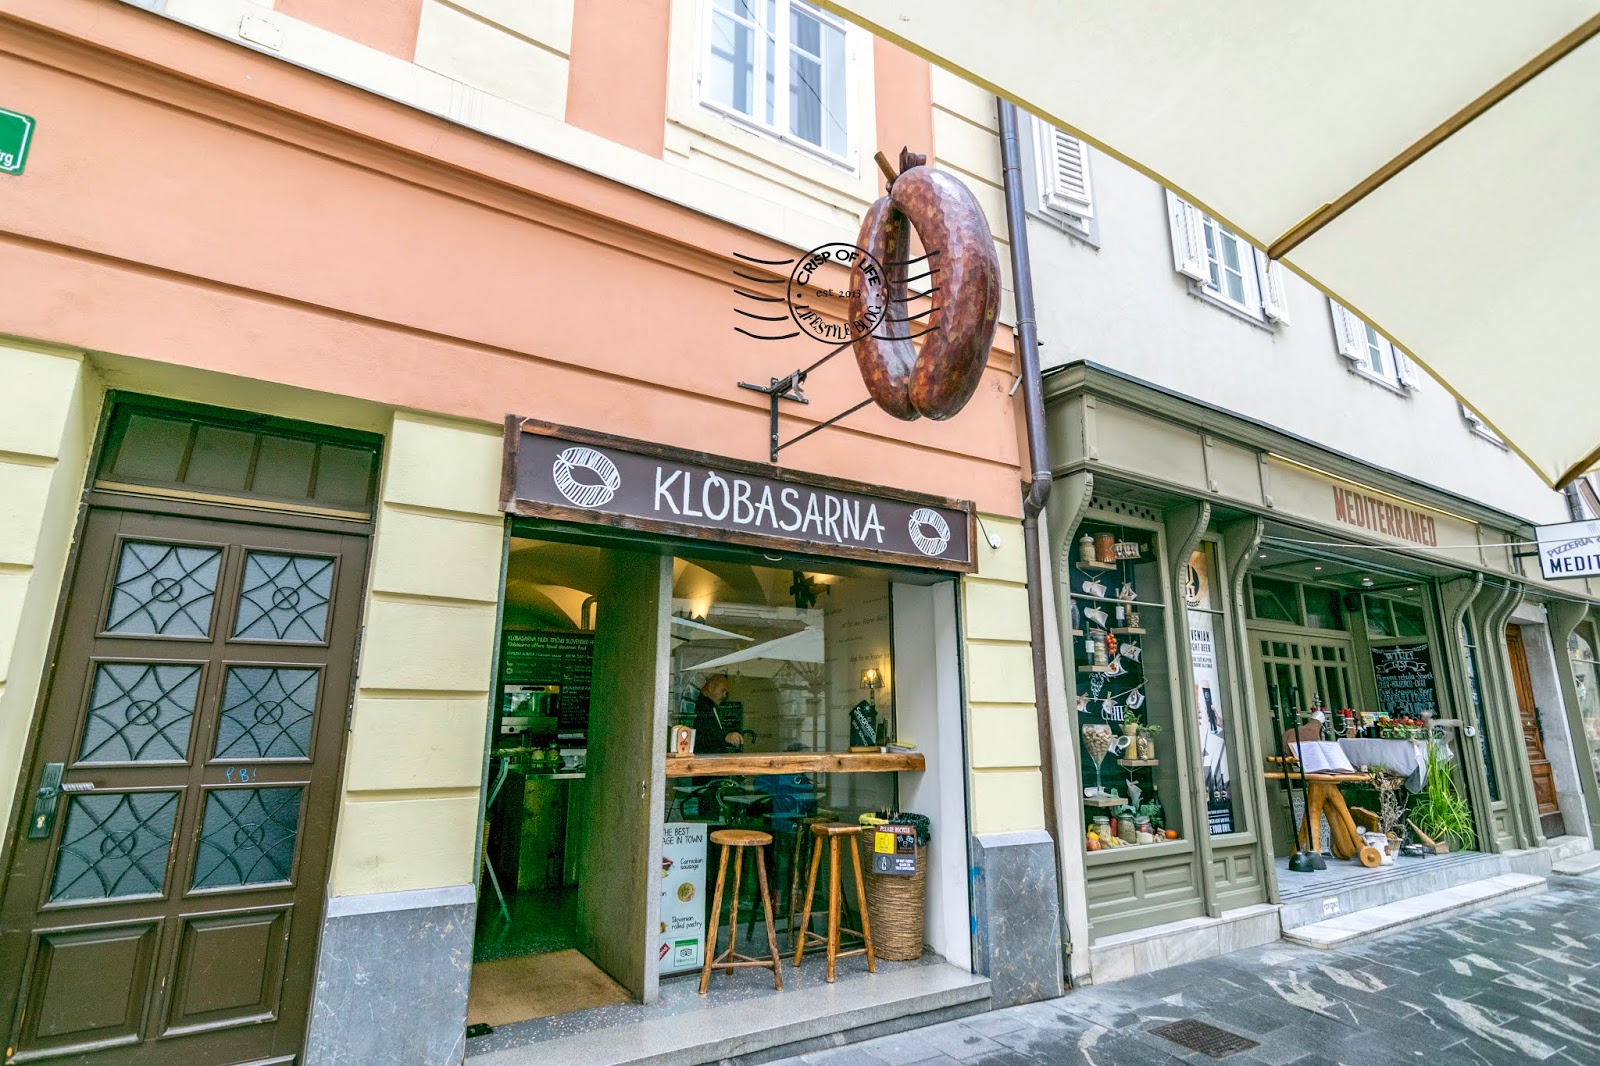 What to Eat in Ljubljana, Slovenia? 